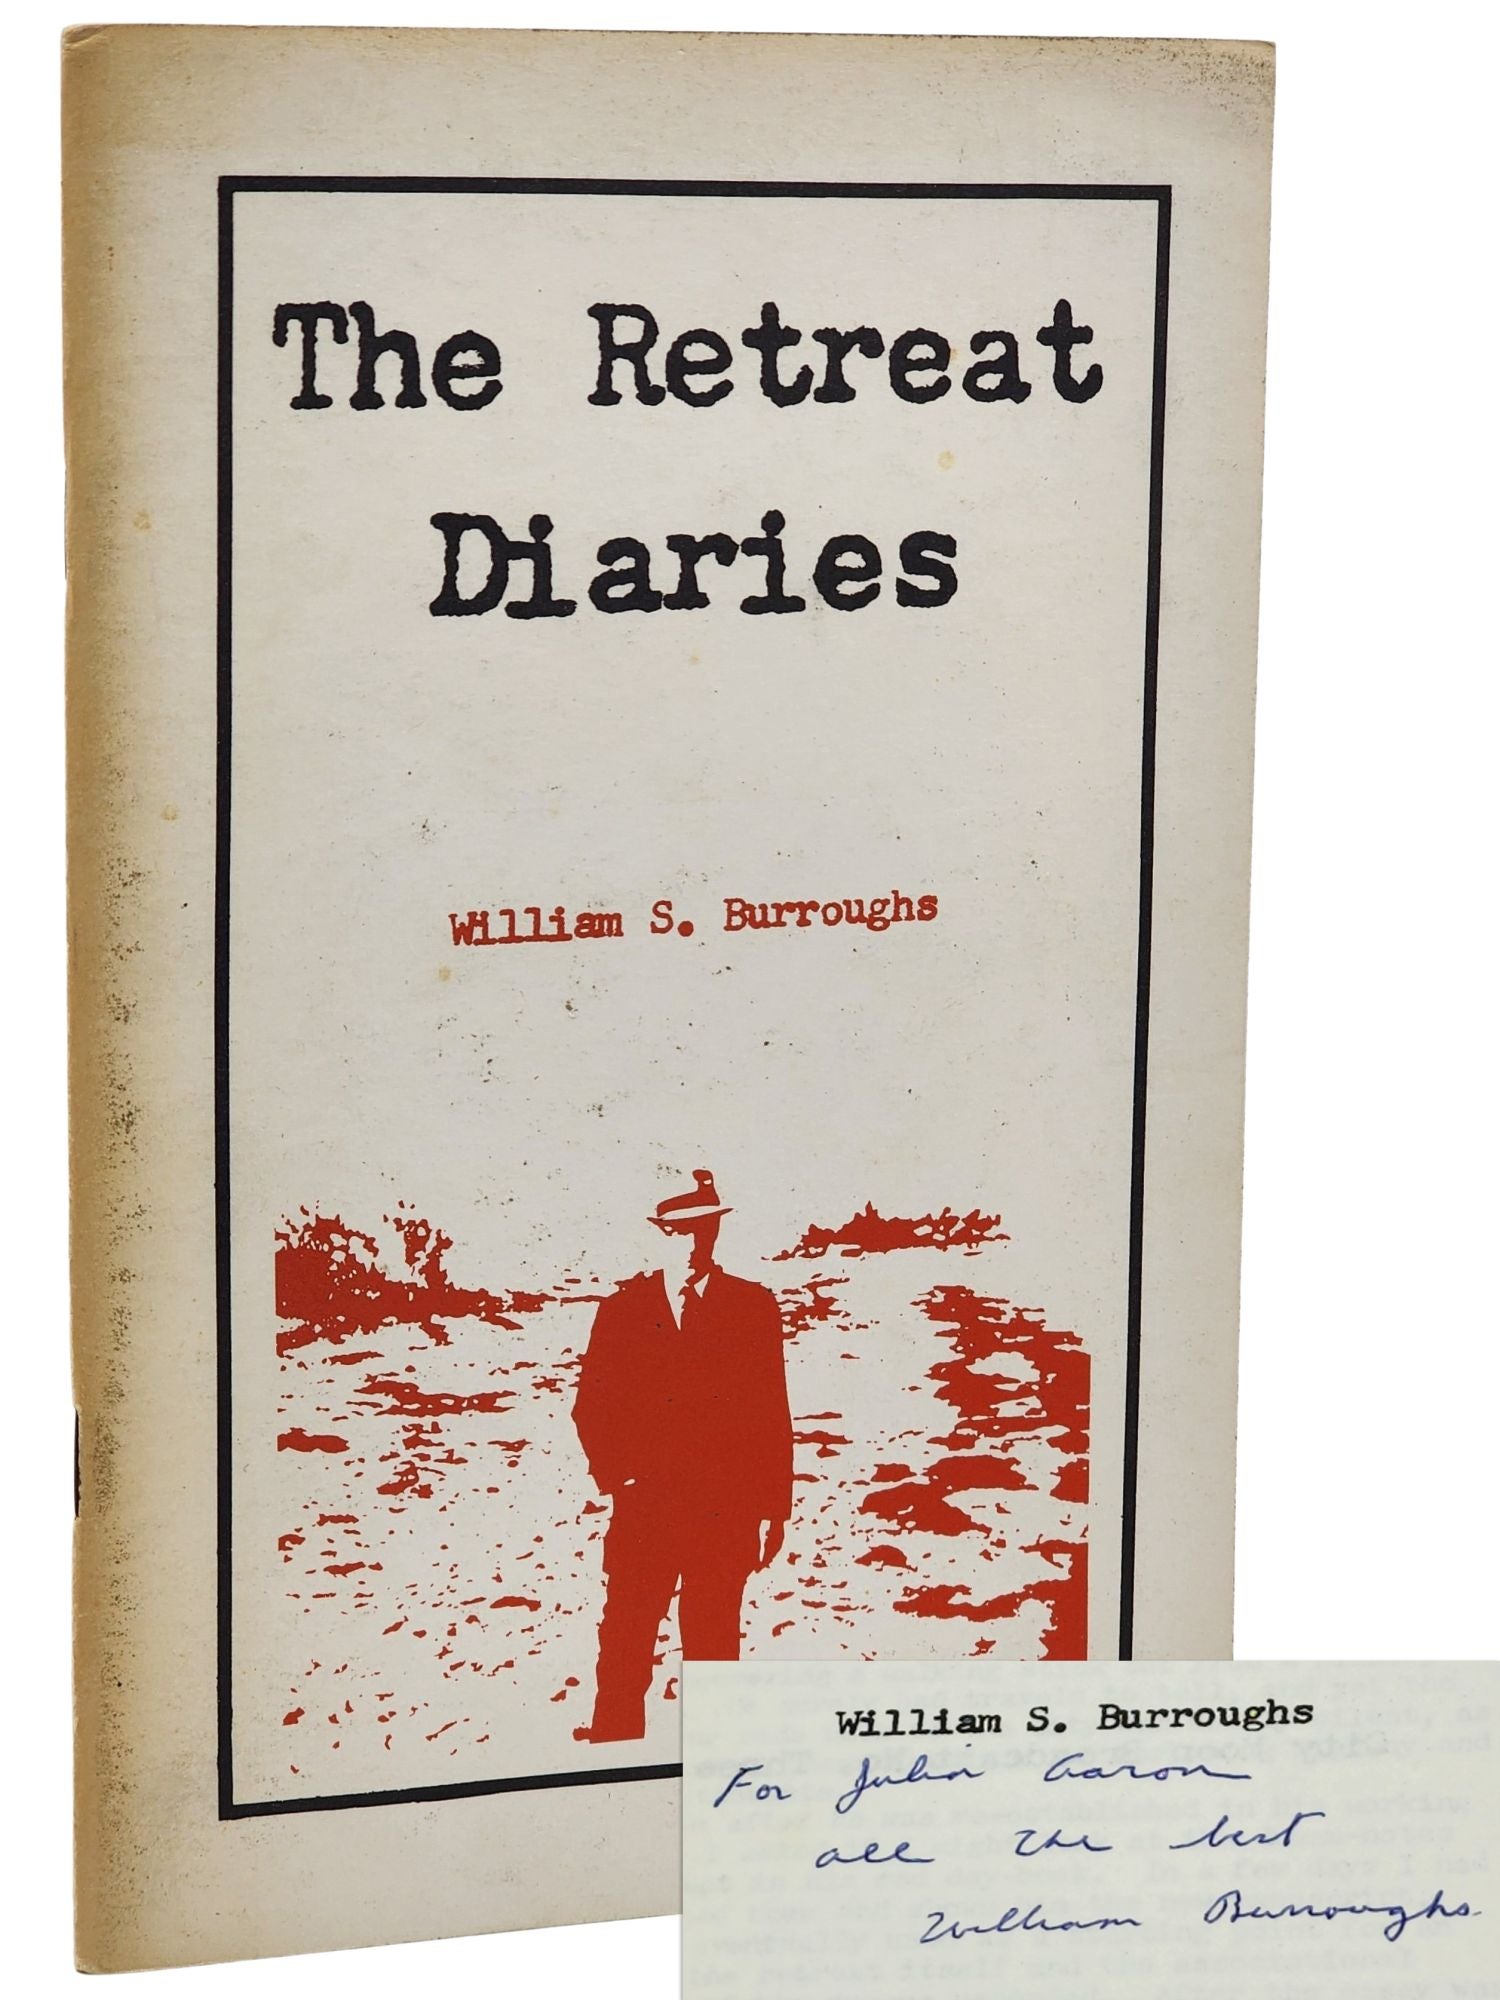 [Book #50820] THE RETREAT DIARIES. William S. Burroughs.